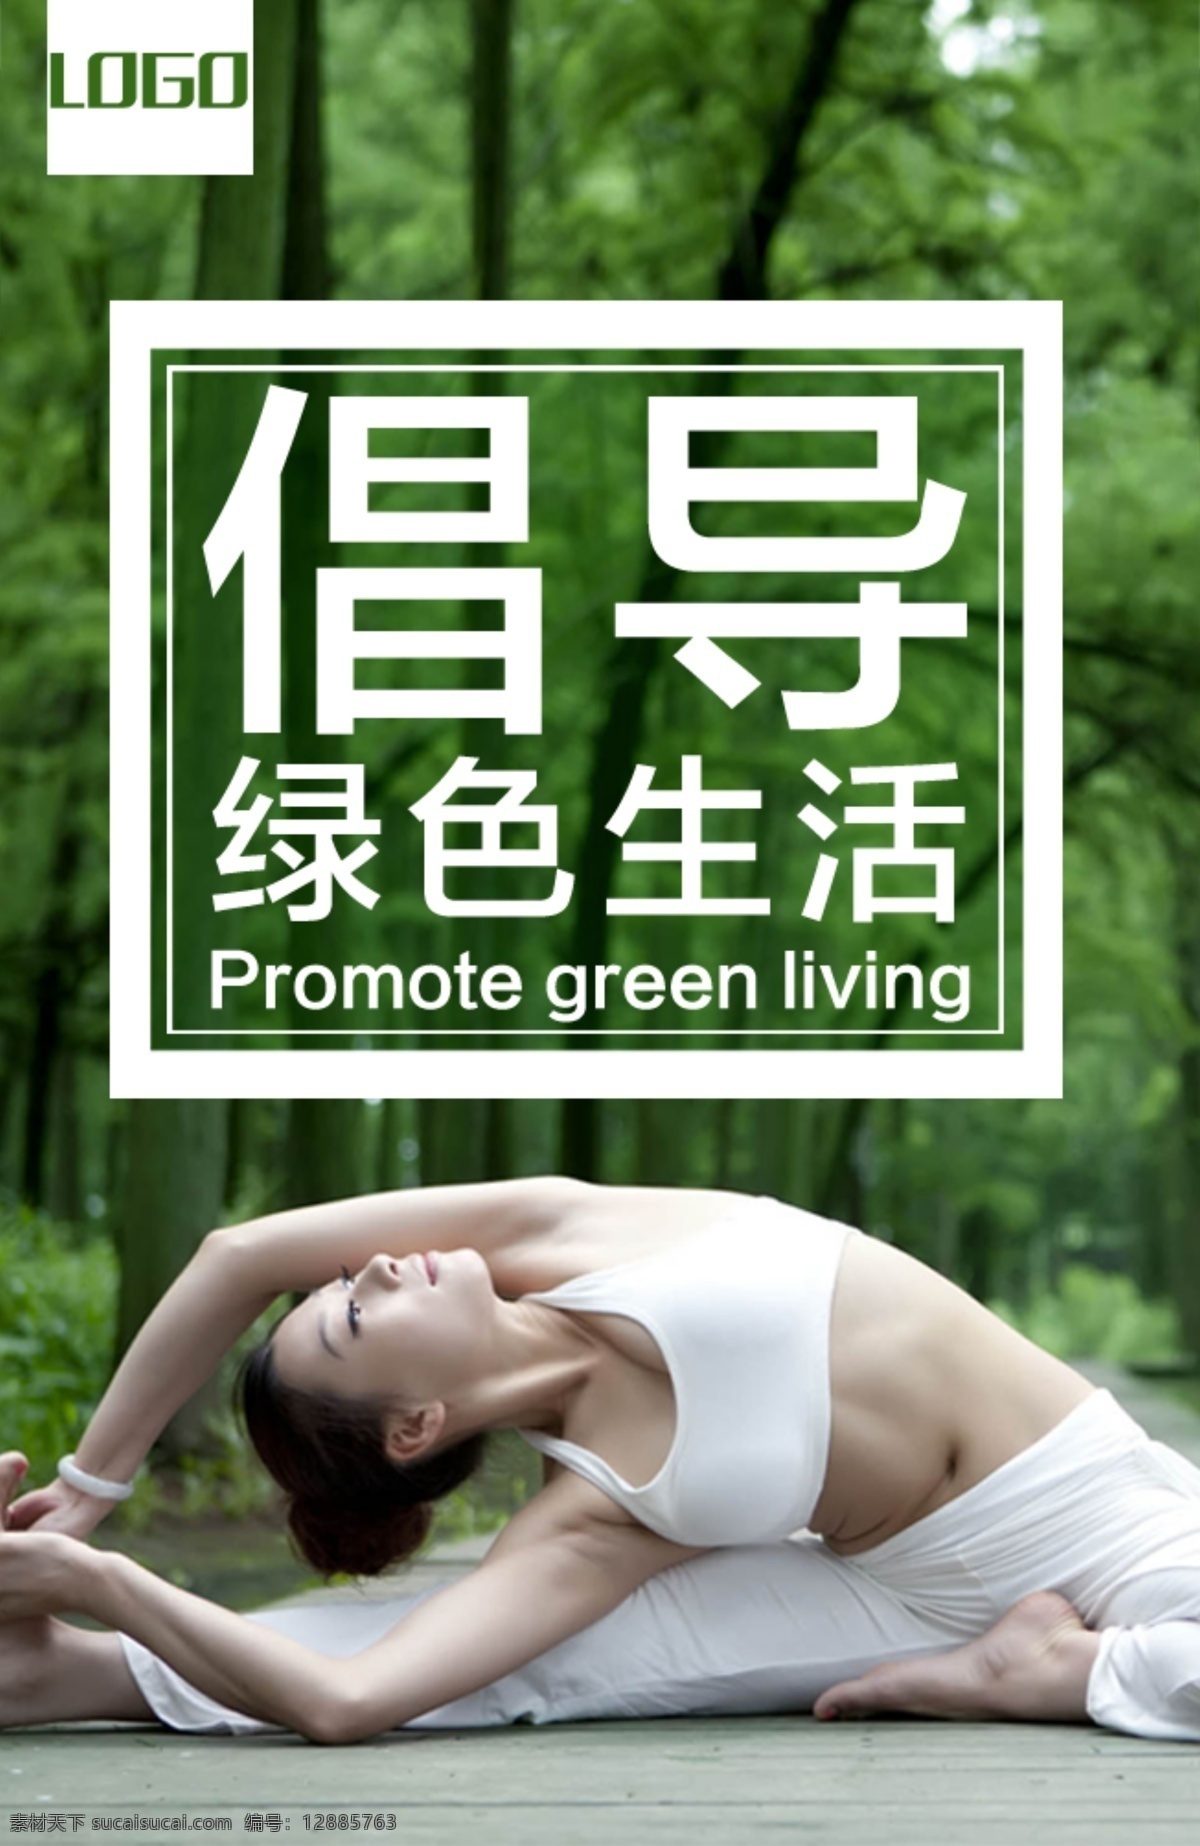 绿色生活 瑜伽 倡导健康 原创设计 原创海报